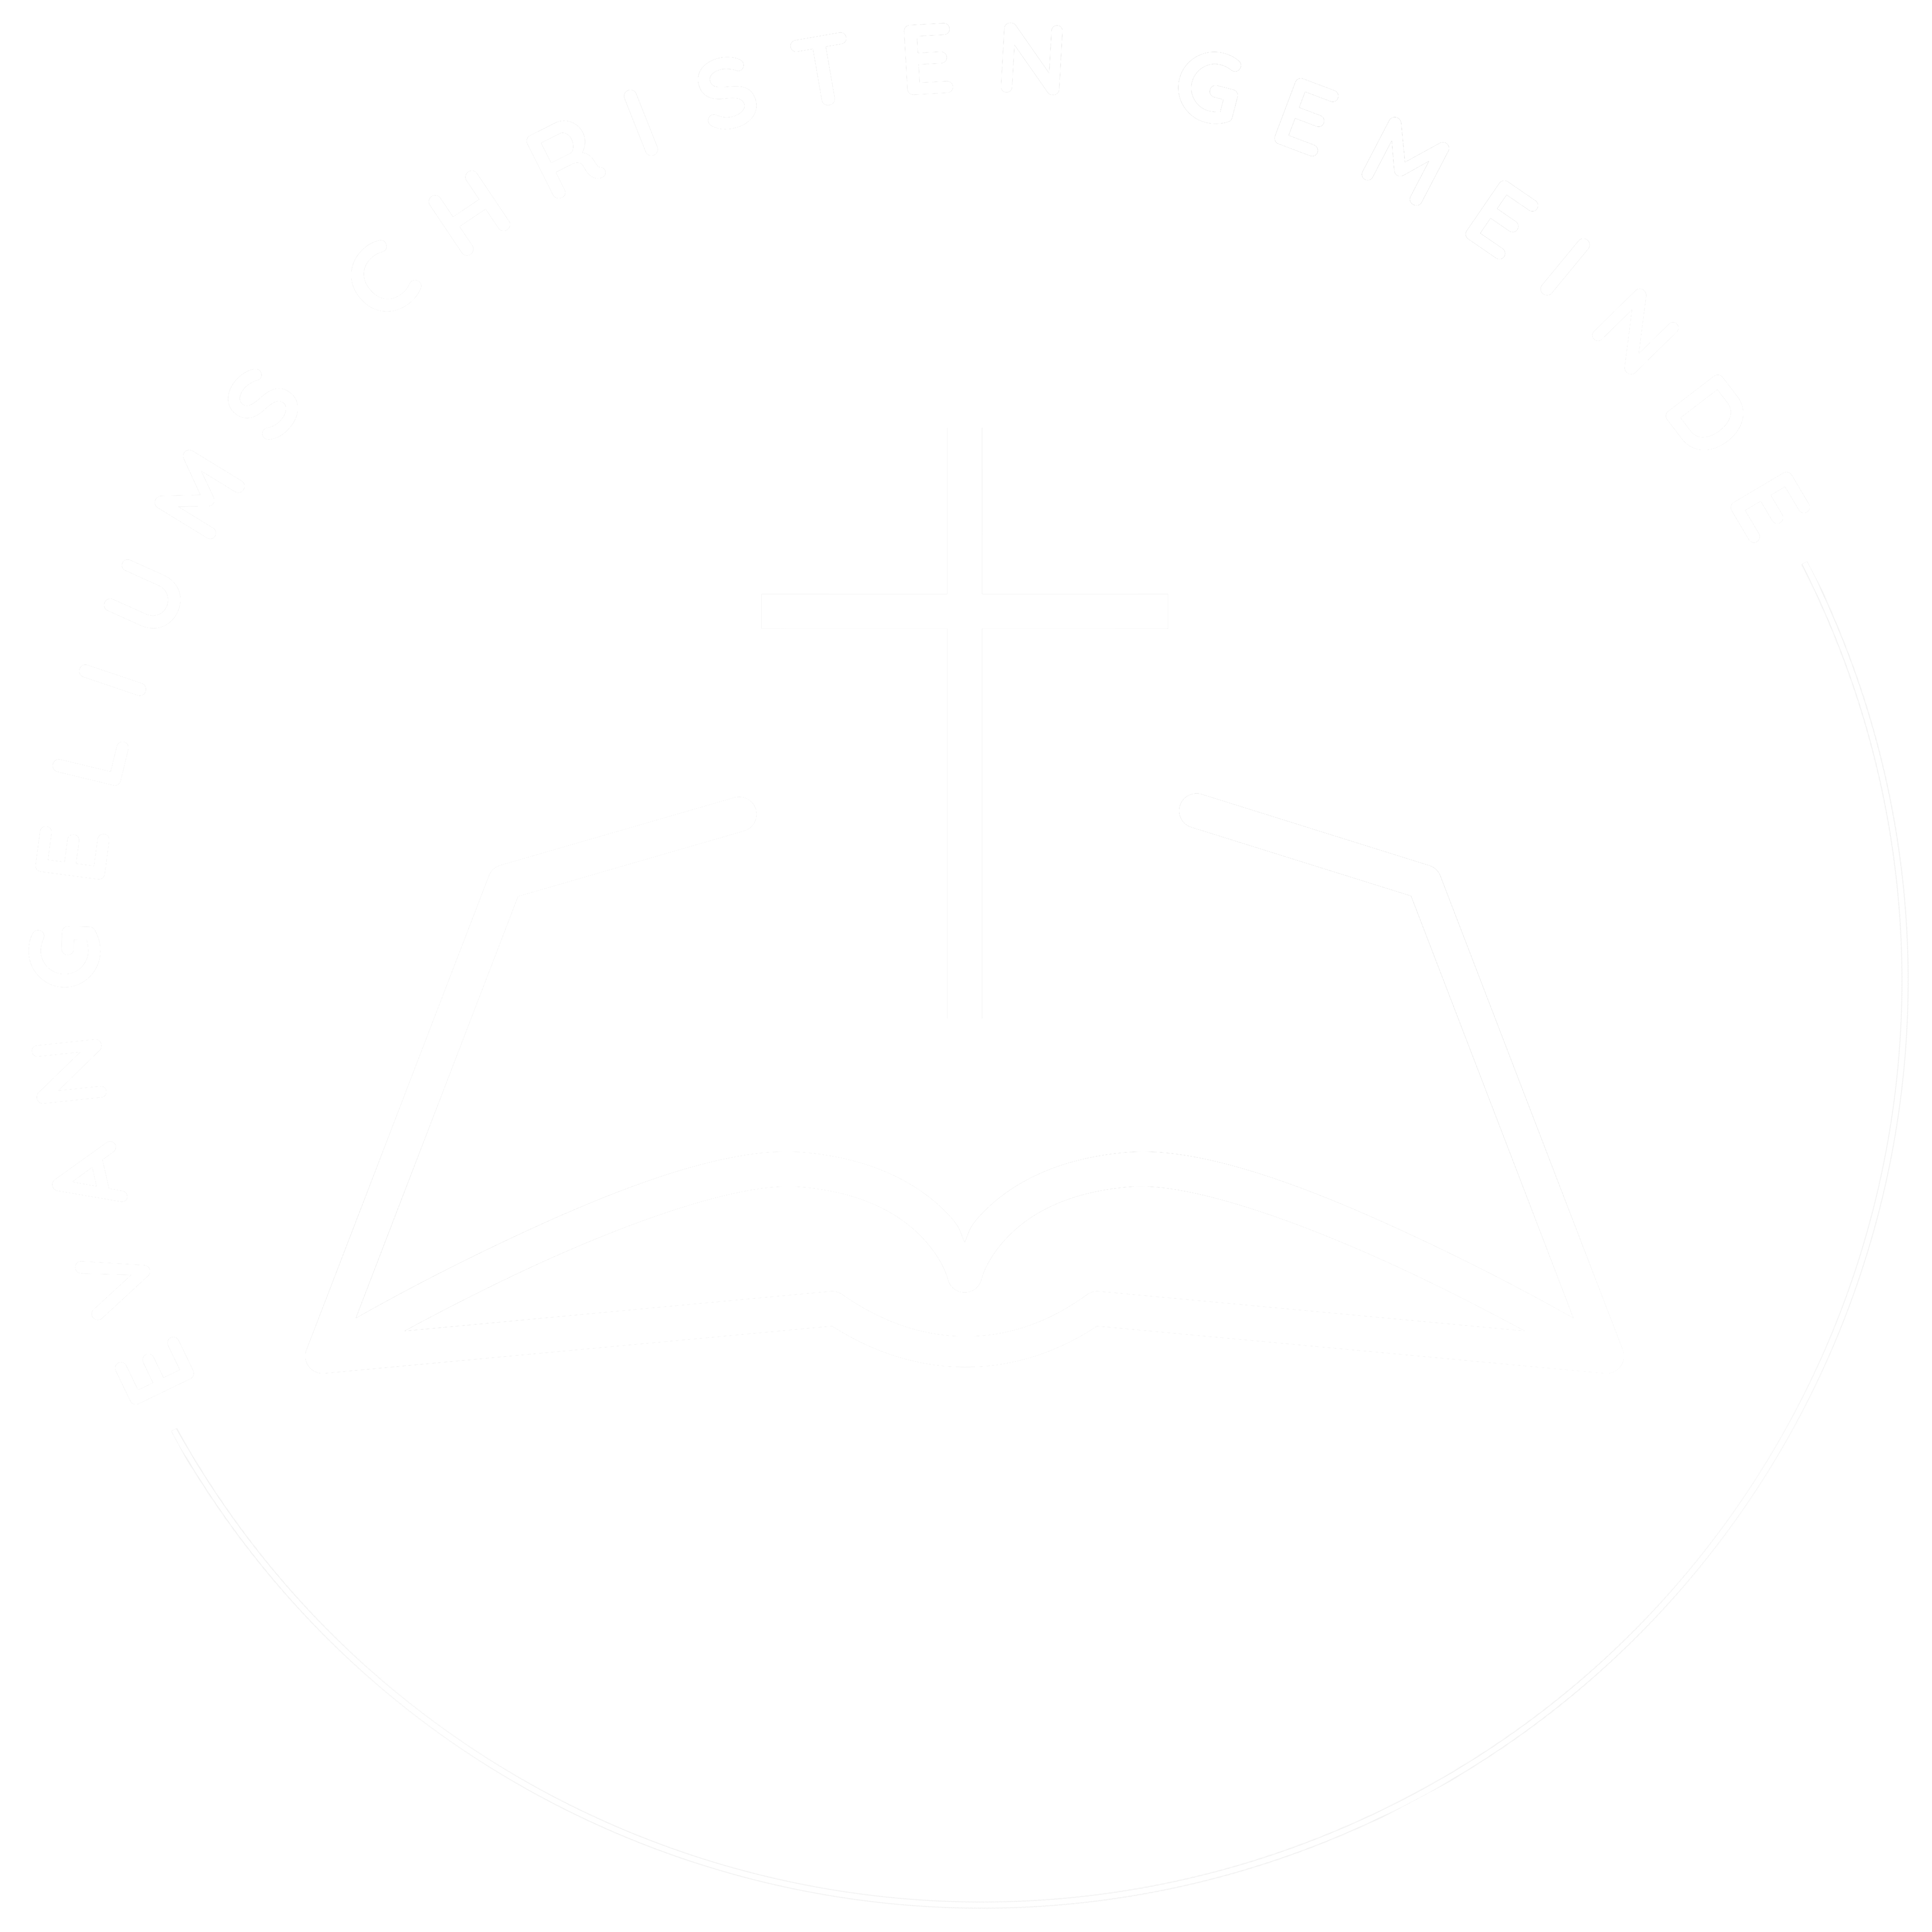 Evangeliums-Christen Gemeinde Recklinghausen